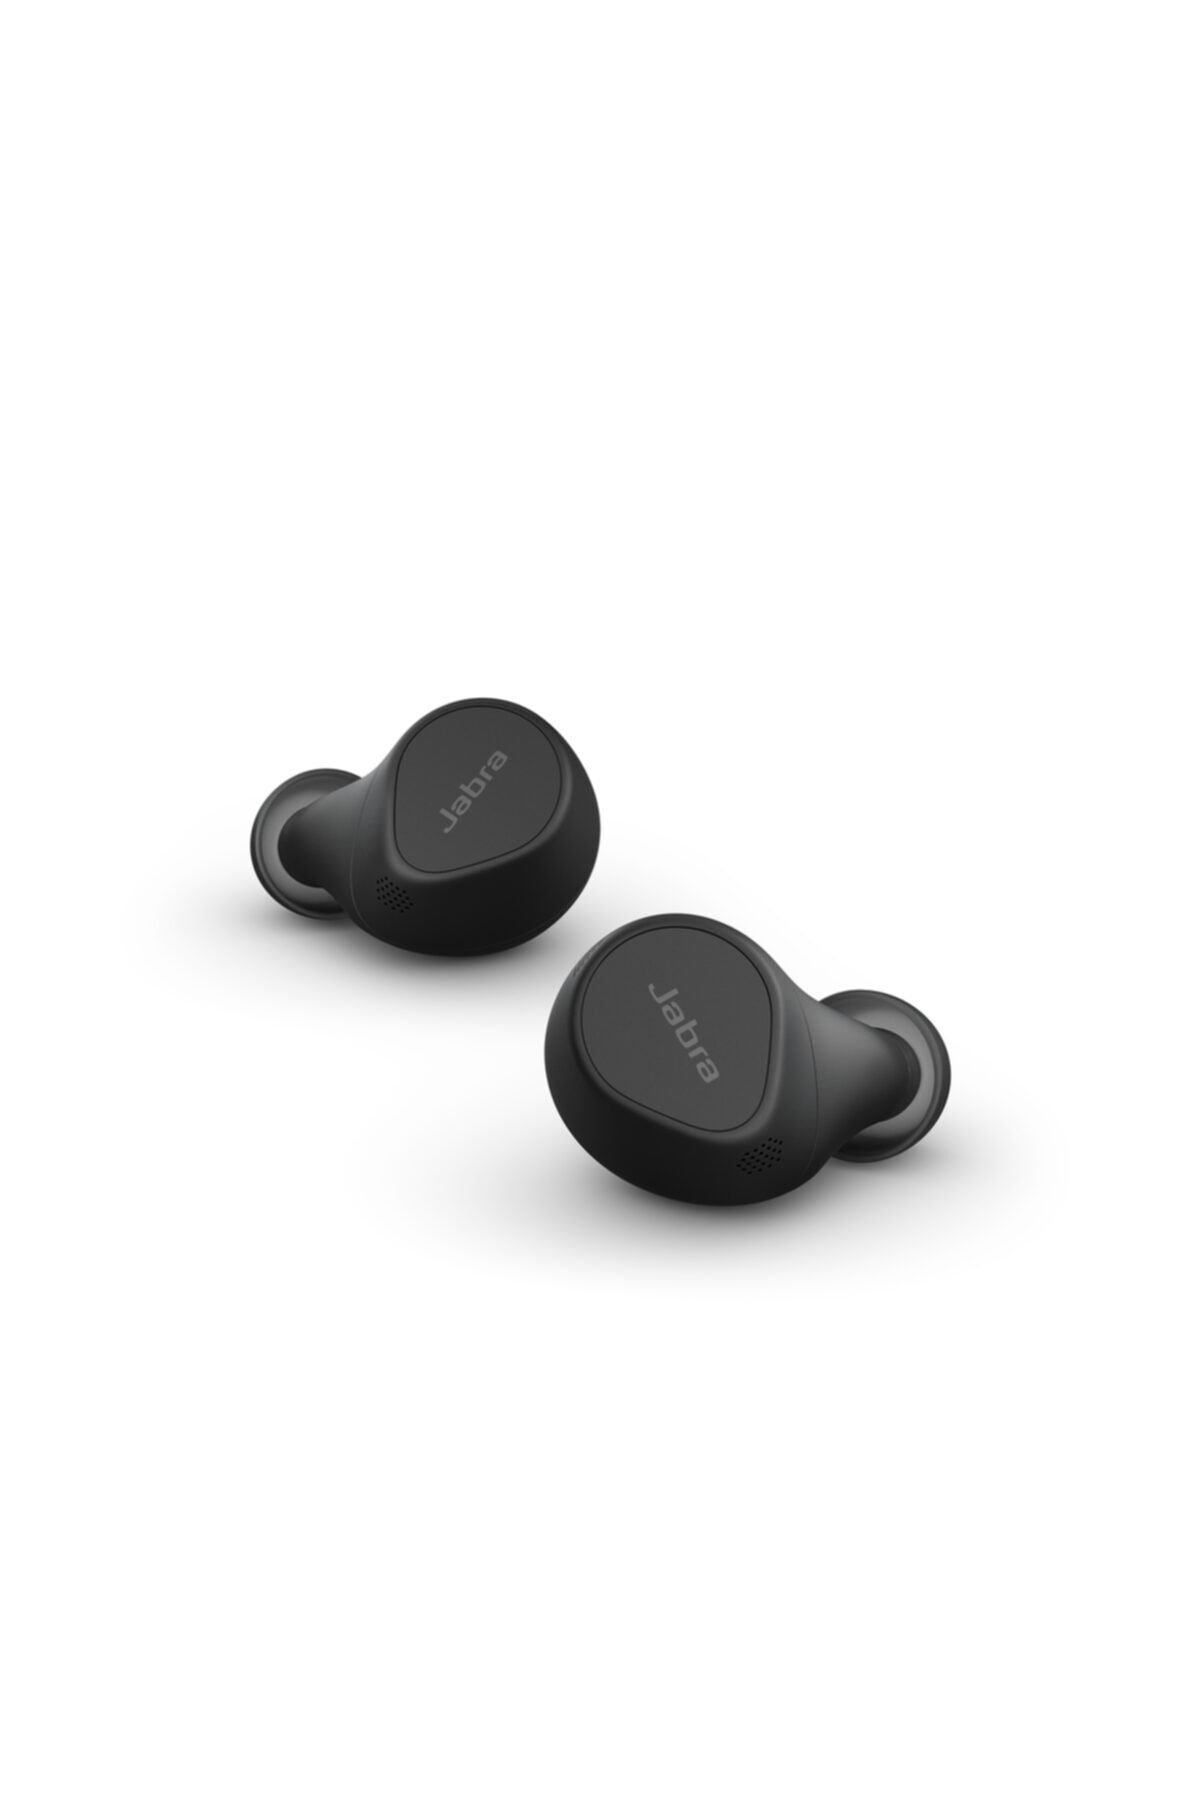 Jabra Elite 7 Pro Multi Sensör Ses Teknolojisine Sahip Bluetooth Kulak Içi Kulaklık - Siyah